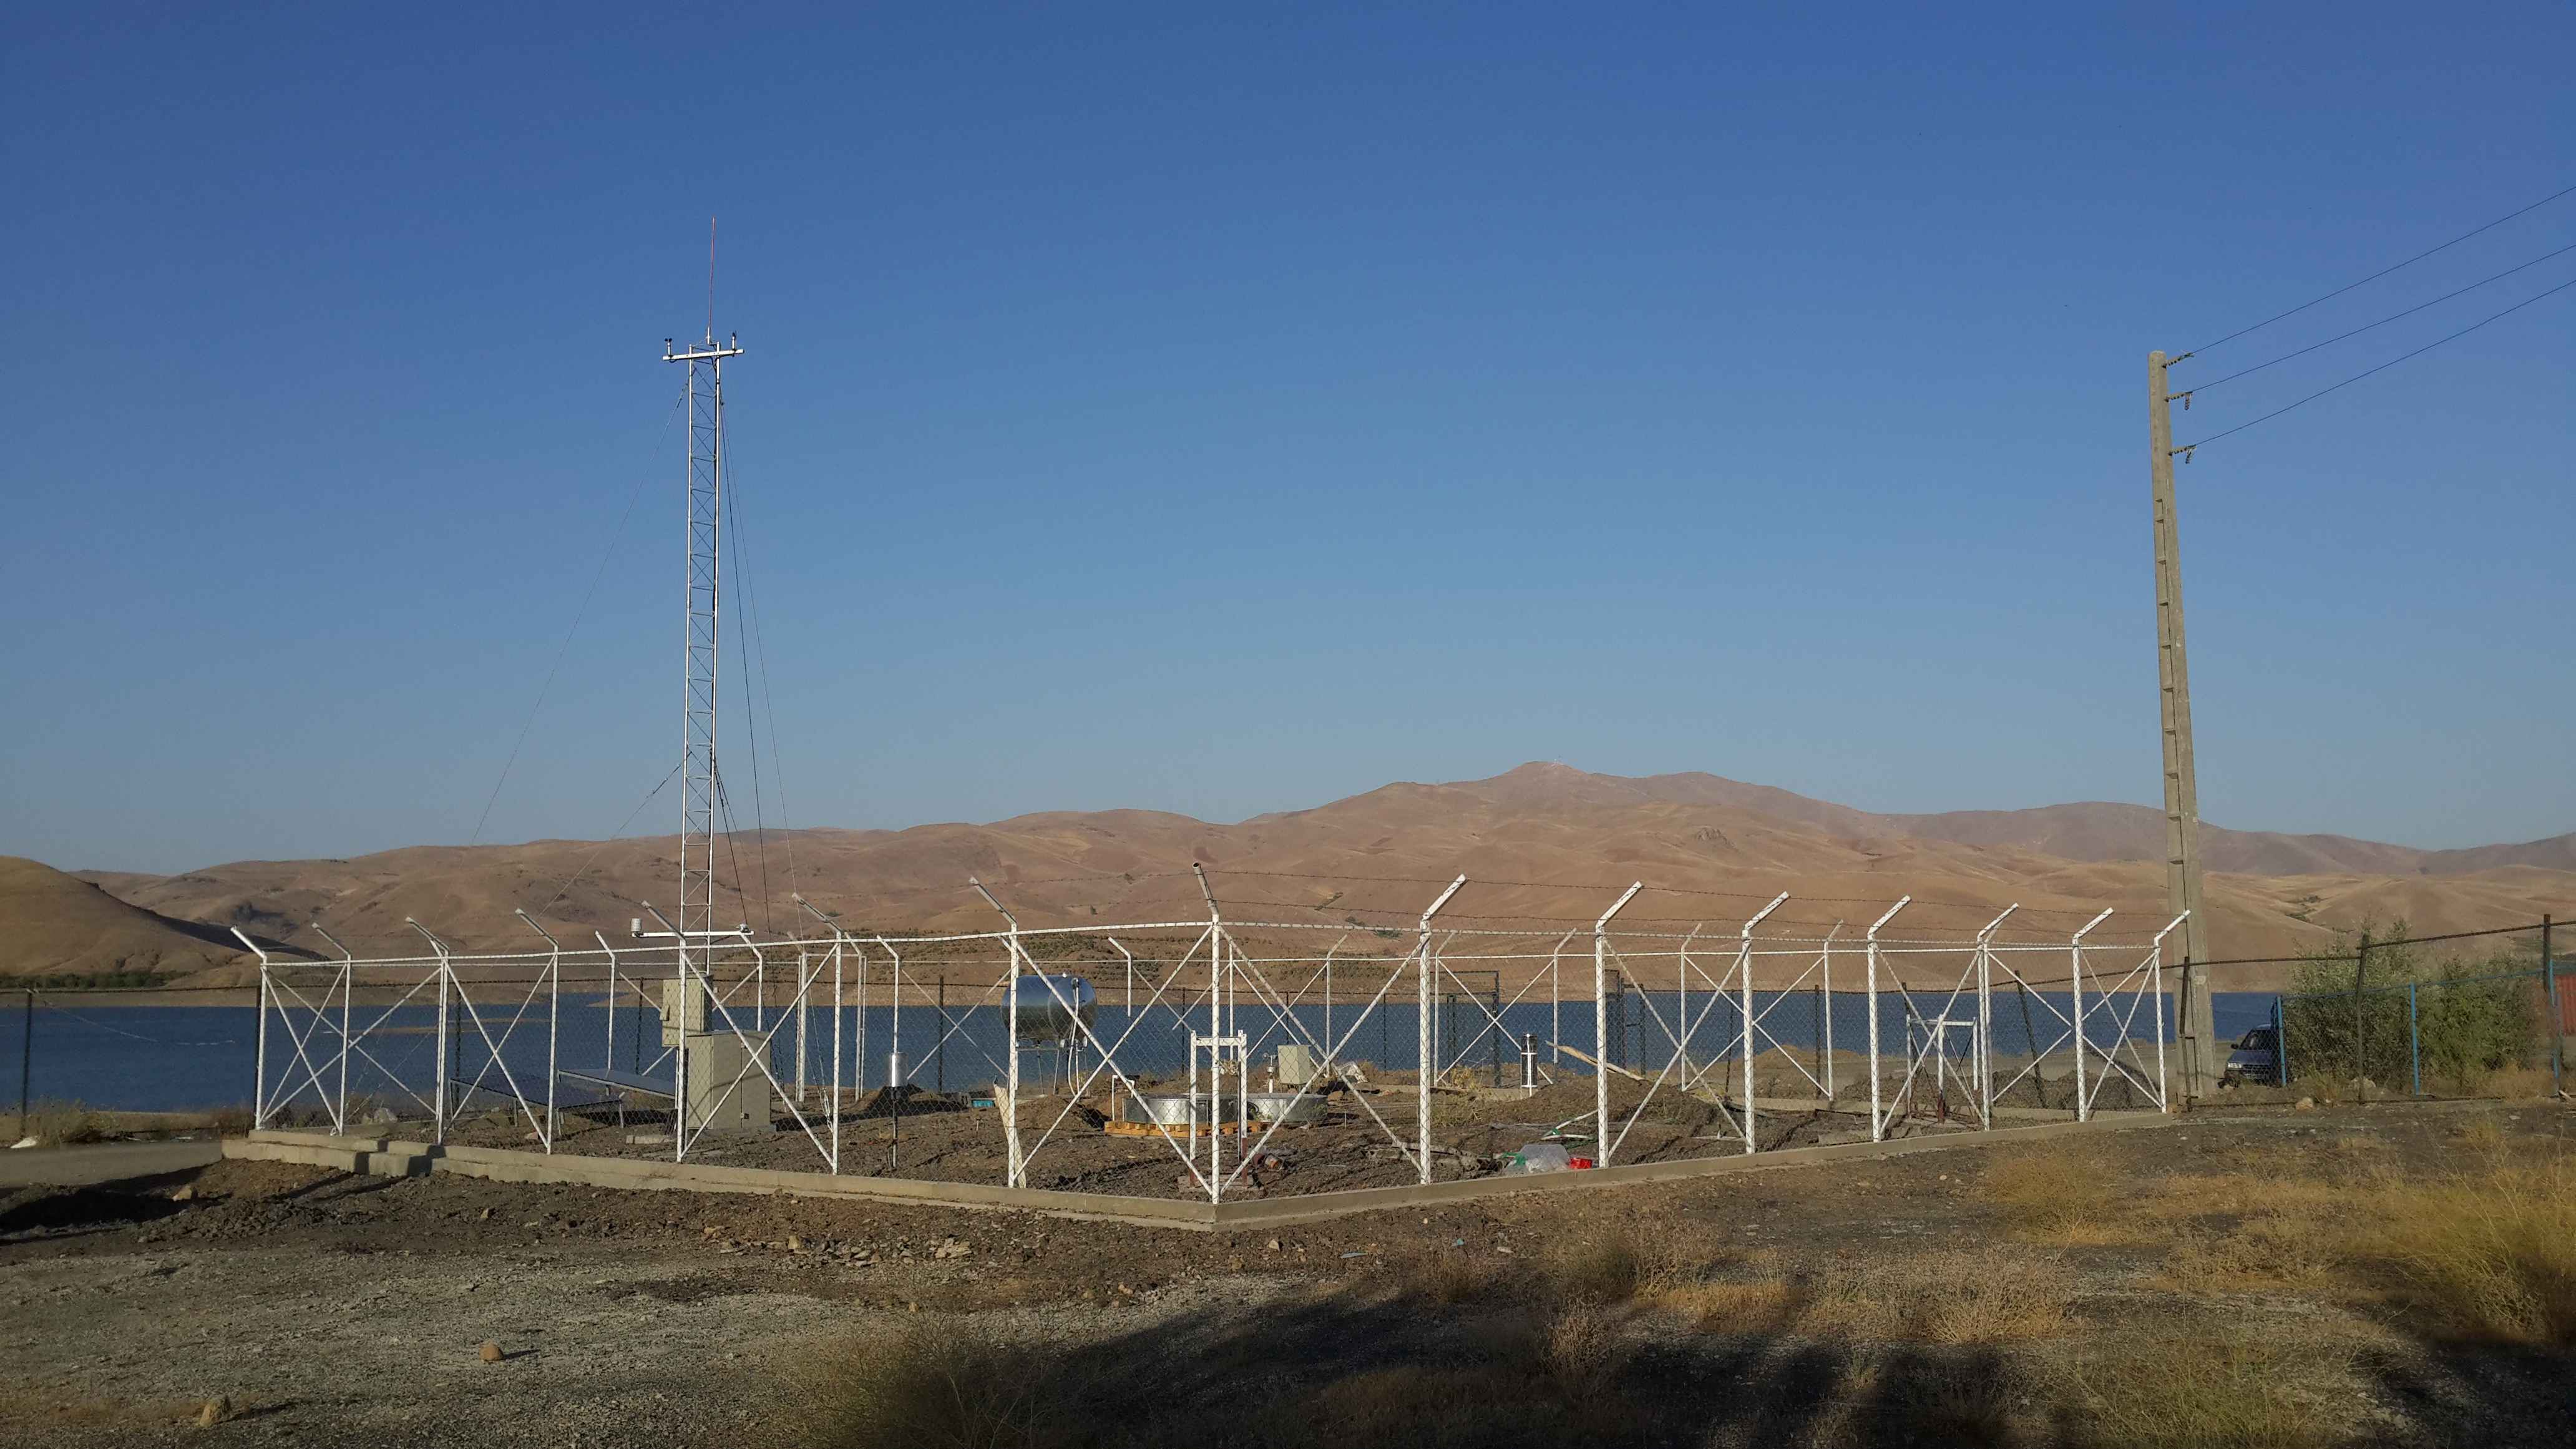 ایستگاه مطالعاتی خودکار آب و هواشناسی مجهز به دیتالاگر و GPRS مودم همراه با سامانه کنترل مرکزی